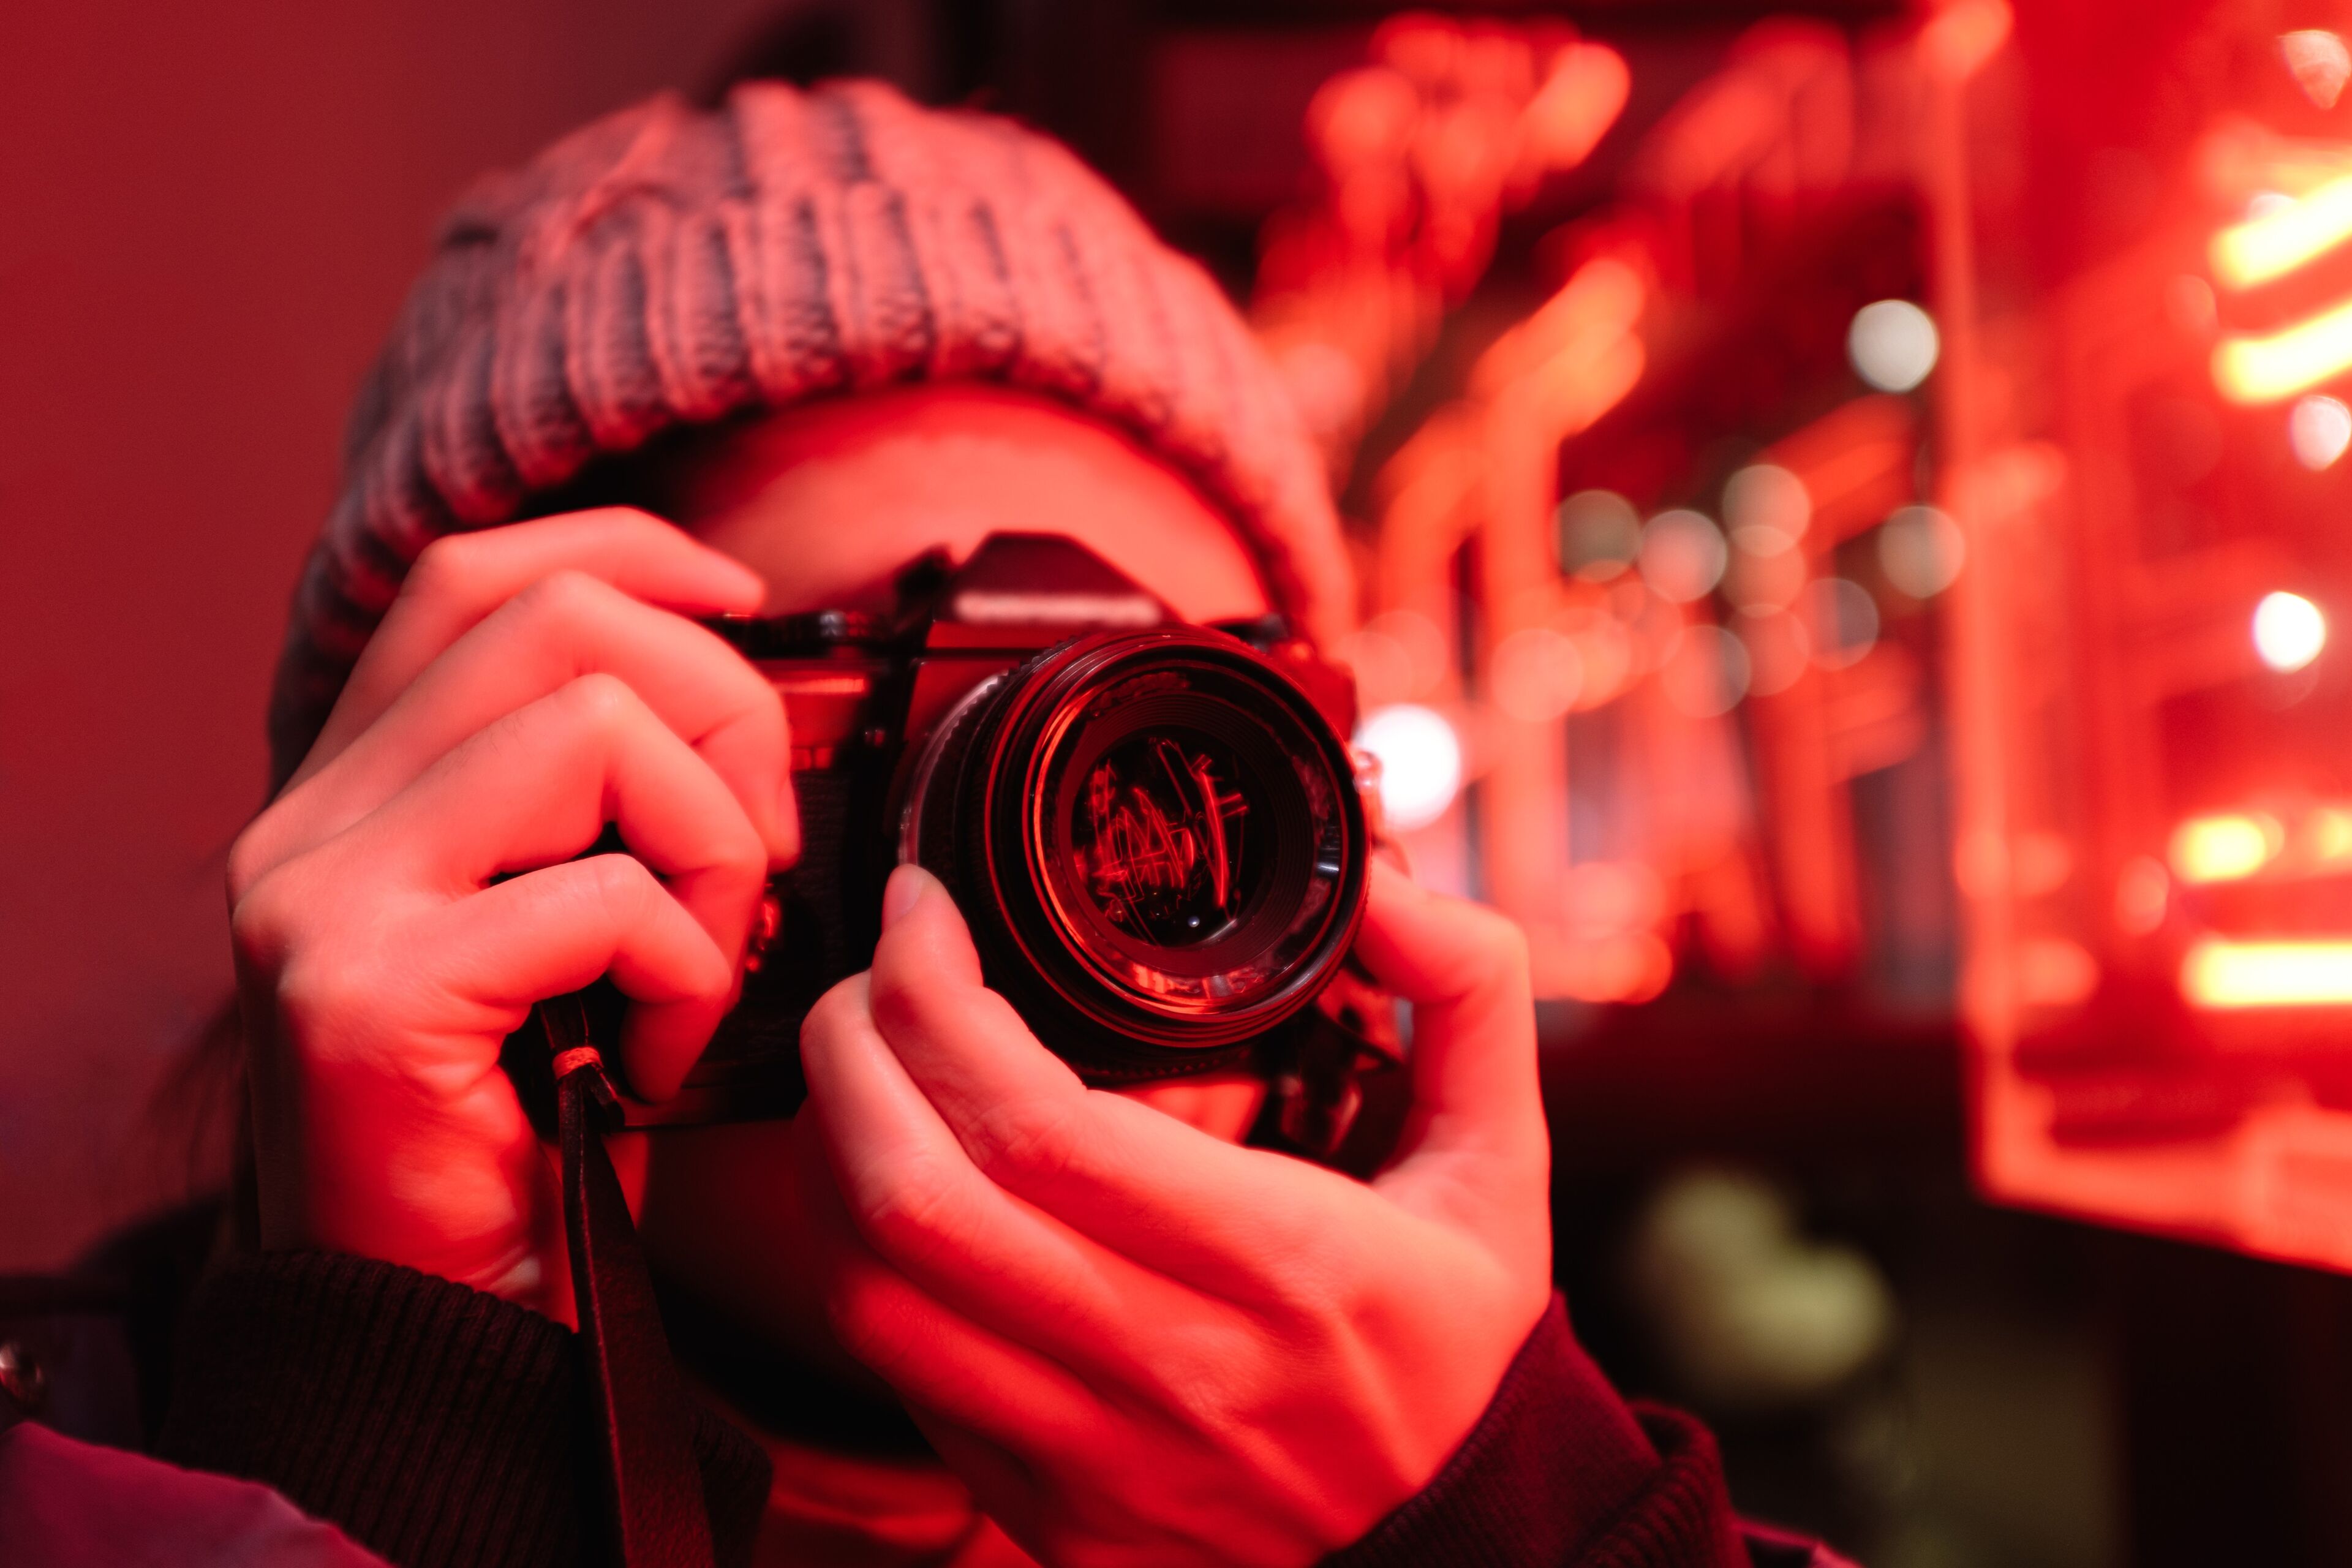 Une personne coiffée d'un bonnet tricoté prend une photo avec un appareil photo reflex numérique, éclairée par une lumière néon rouge vibrante.